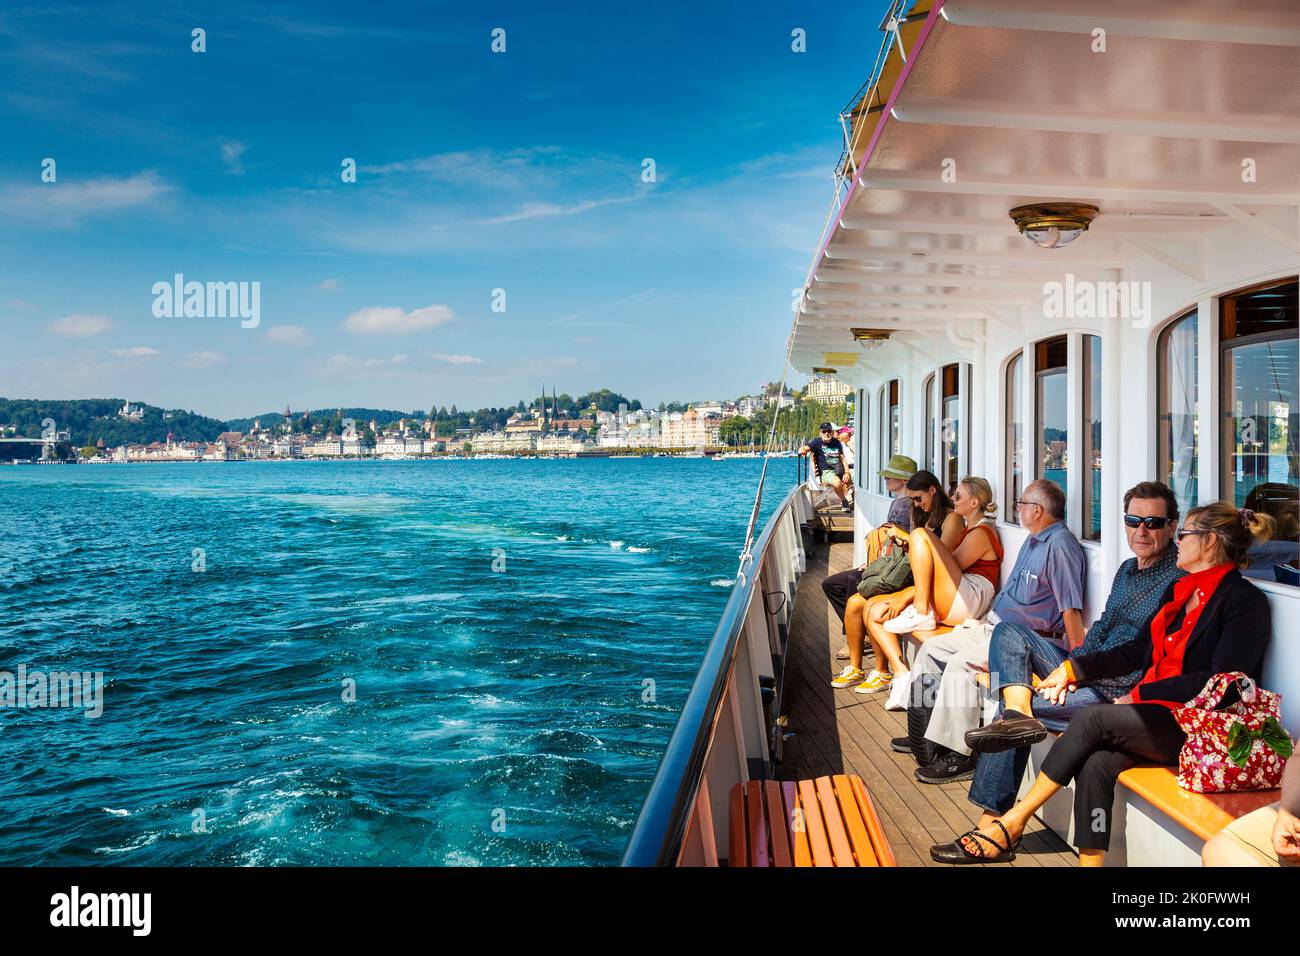 Les gens qui apprécient la promenade en bateau à vapeur sur le lac de Lucerne avec la ville en arrière-plan, Lucerne, Suisse Banque D'Images